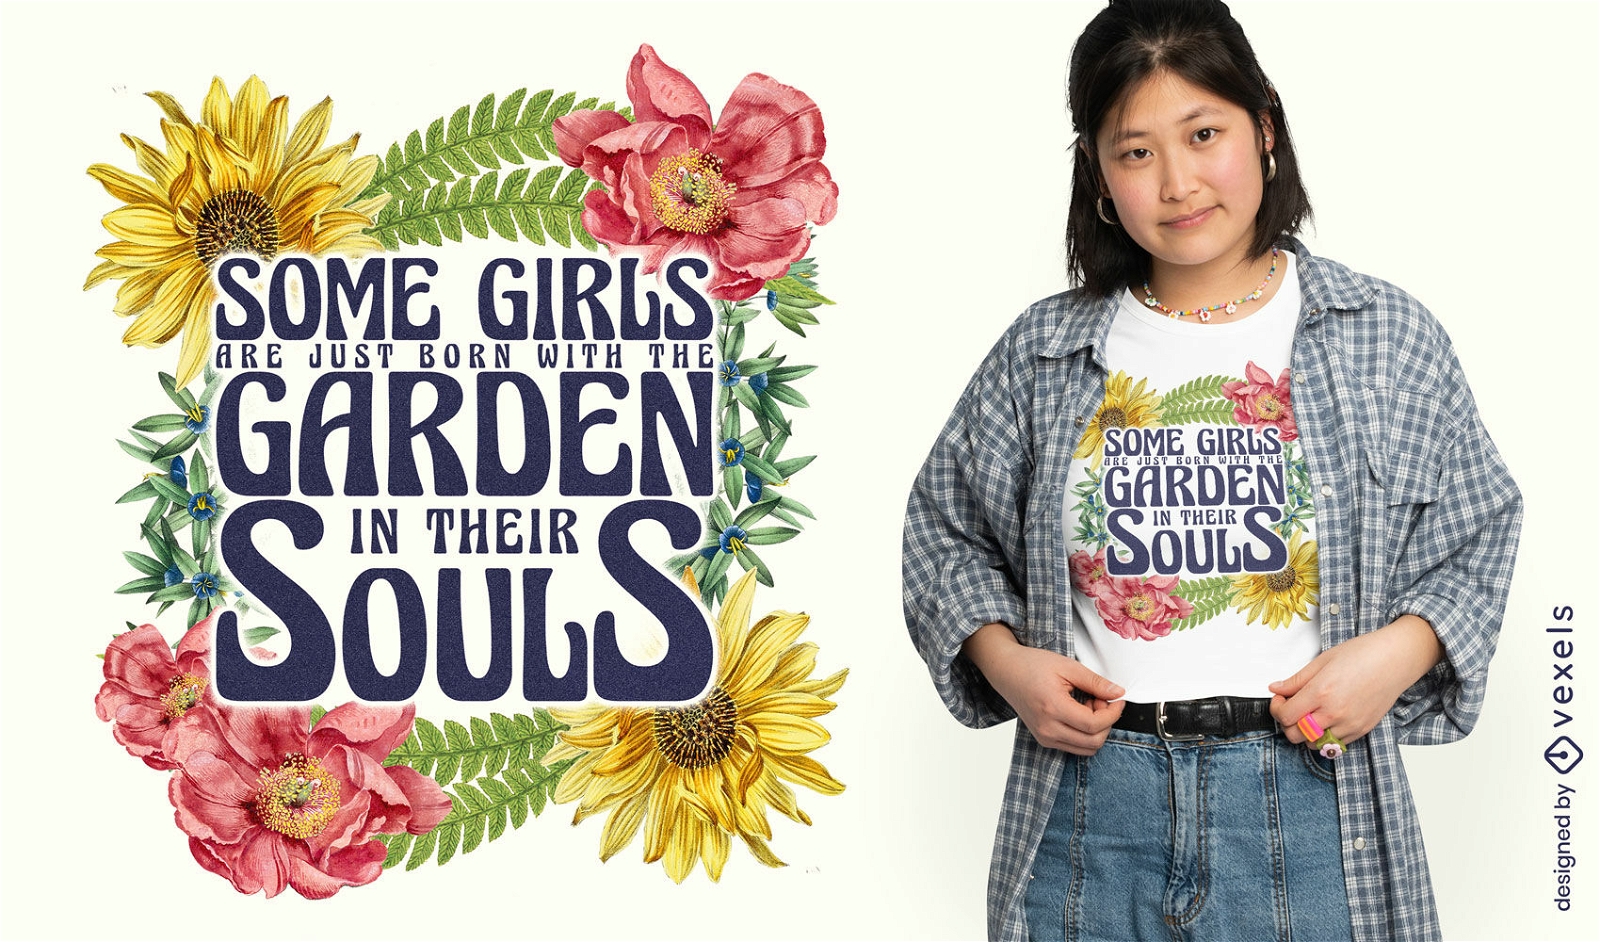 Dise?o de camiseta de cita de chicas de jardiner?a.